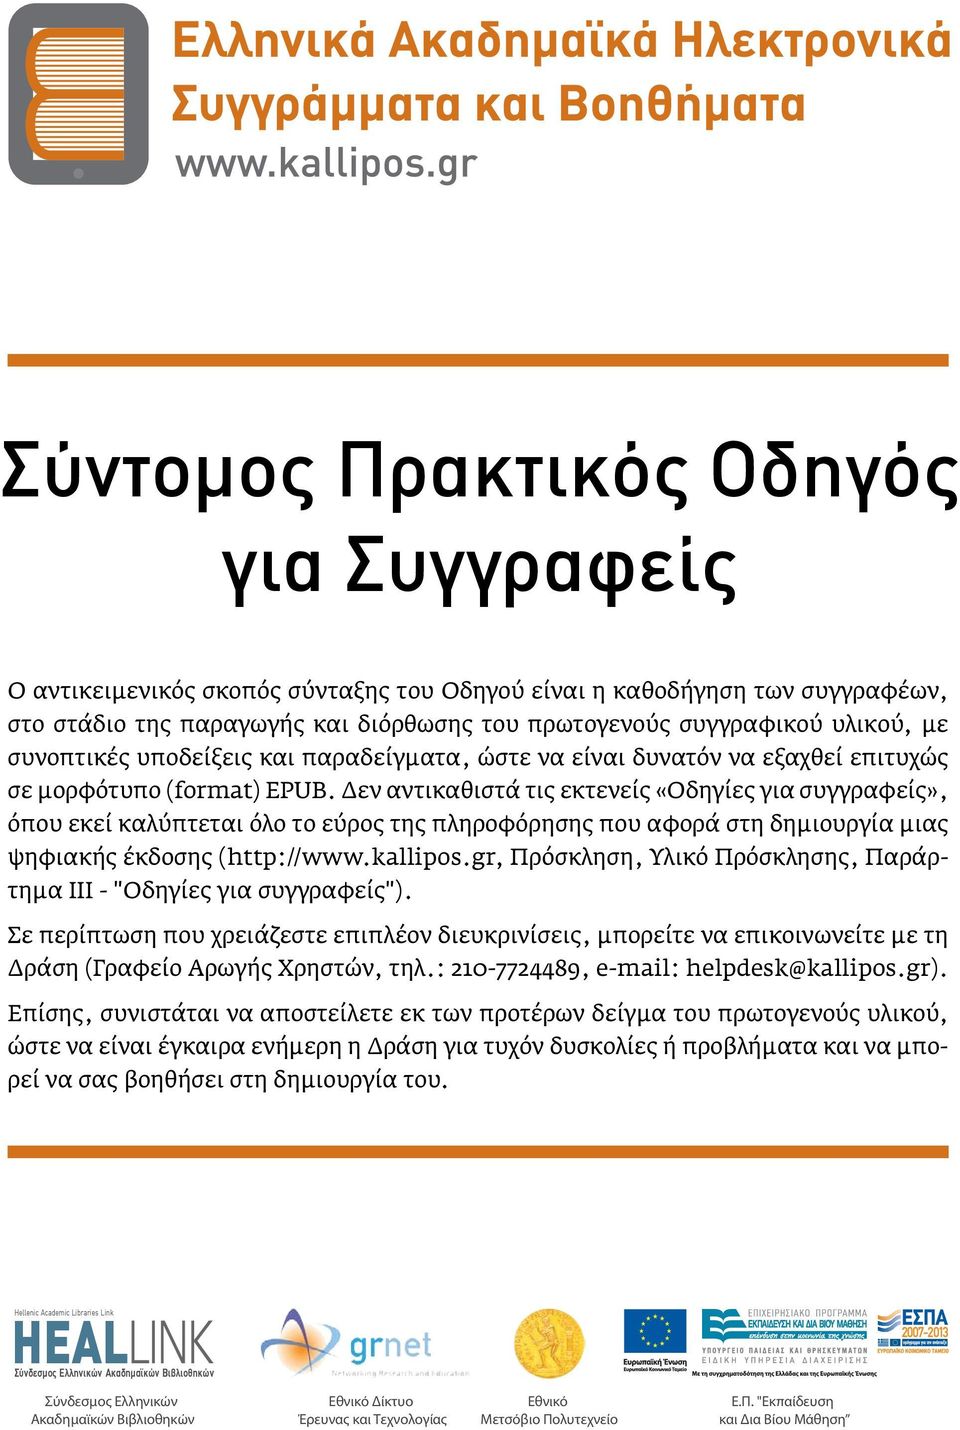 Δεν αντικαθιστά τις εκτενείς «Οδηγίες για συγγραφείς», όπου εκεί καλύπτεται όλο το εύρος της πληροφόρησης που αφορά στη δημιουργία μιας ψηφιακής έκδοσης (http://www.kallipos.